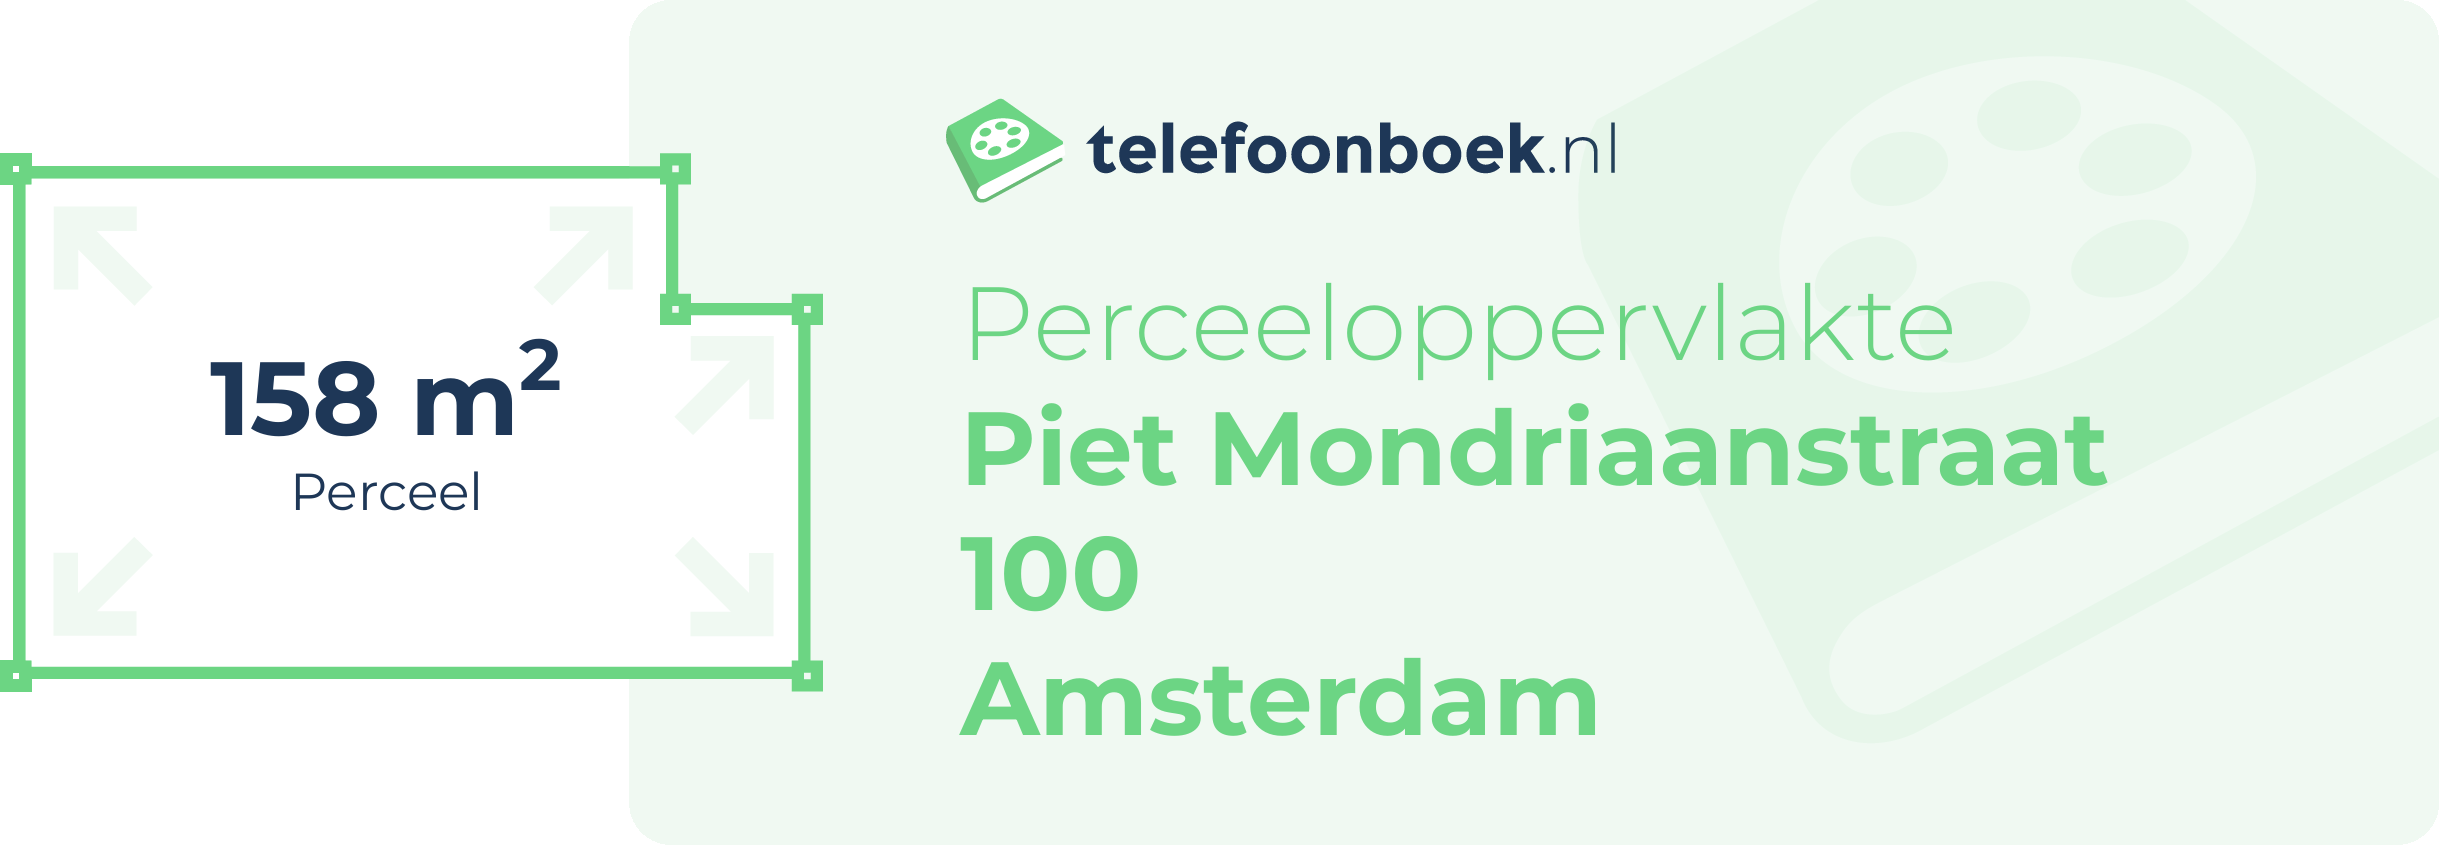 Perceeloppervlakte Piet Mondriaanstraat 100 Amsterdam